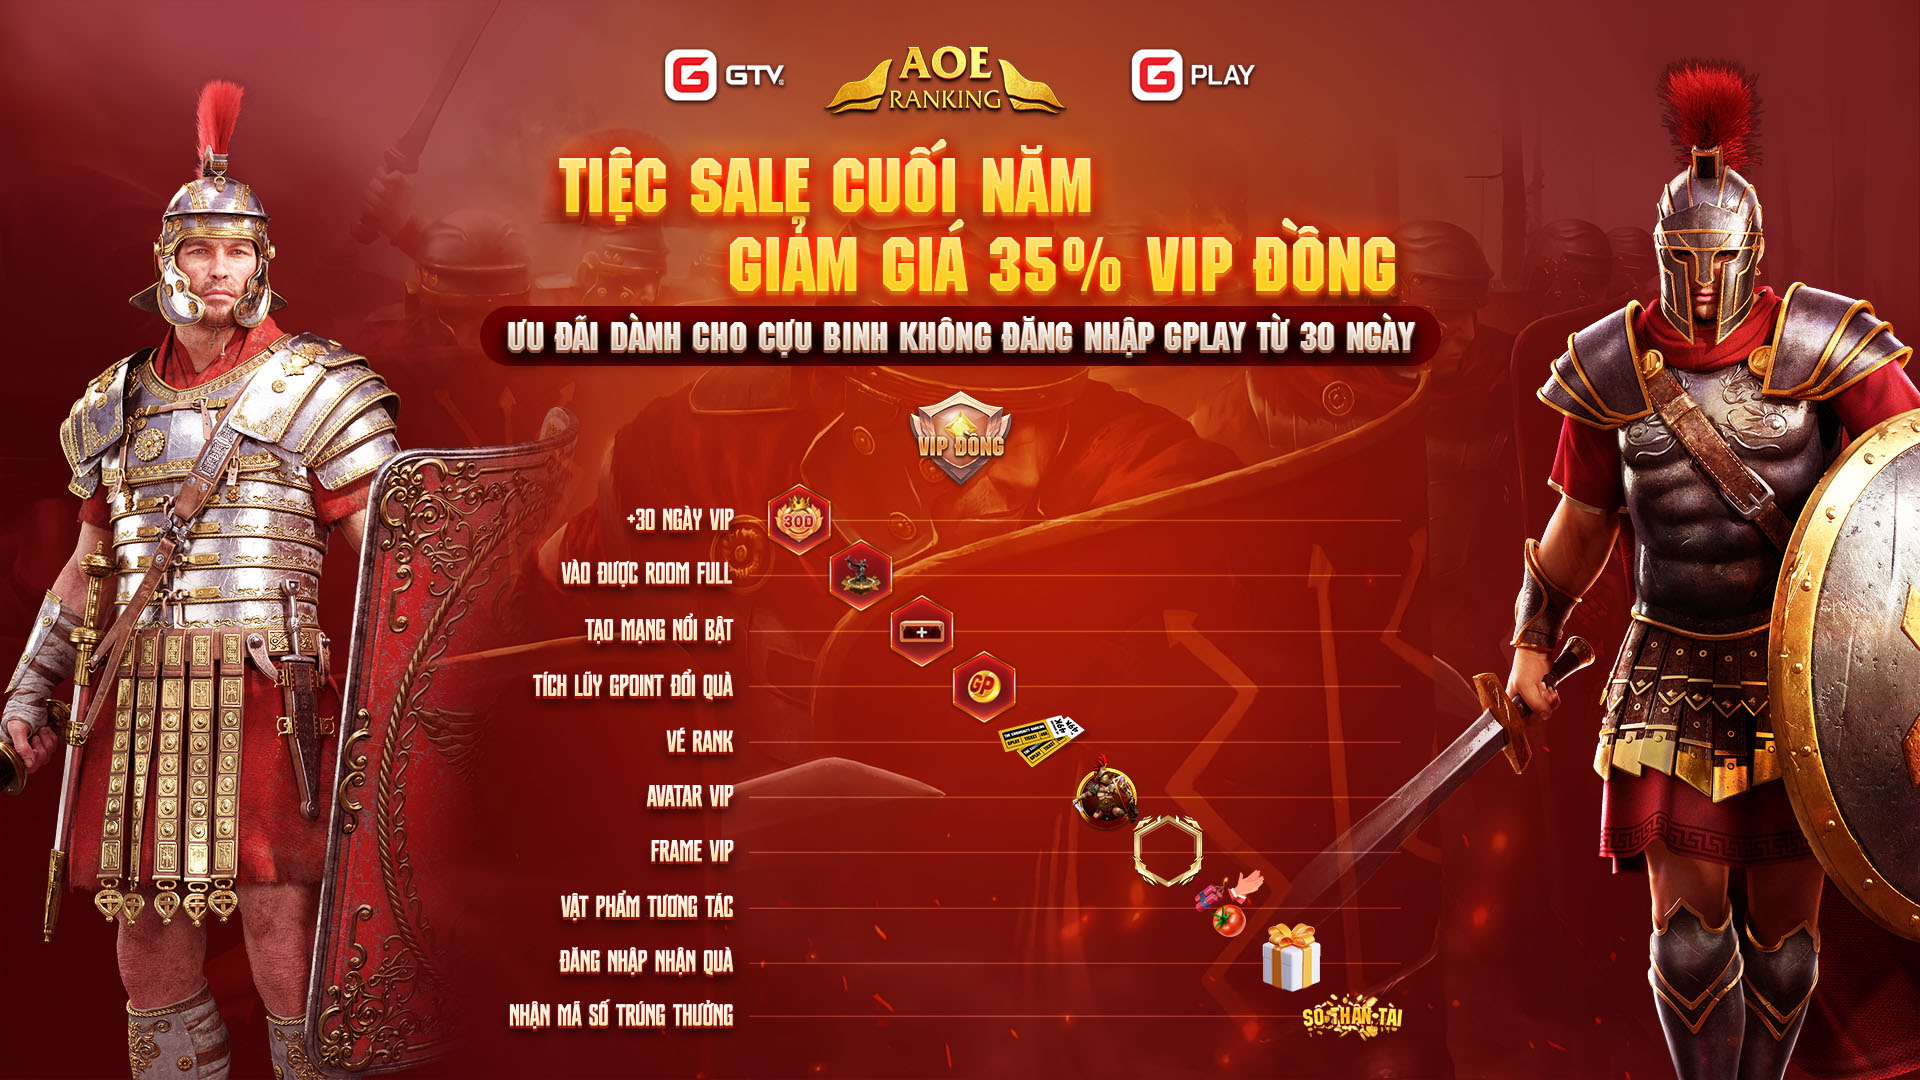 Tiệc sale cuối năm cho các cựu binh: VIP GPlay giảm 35% còn 51K Gạo